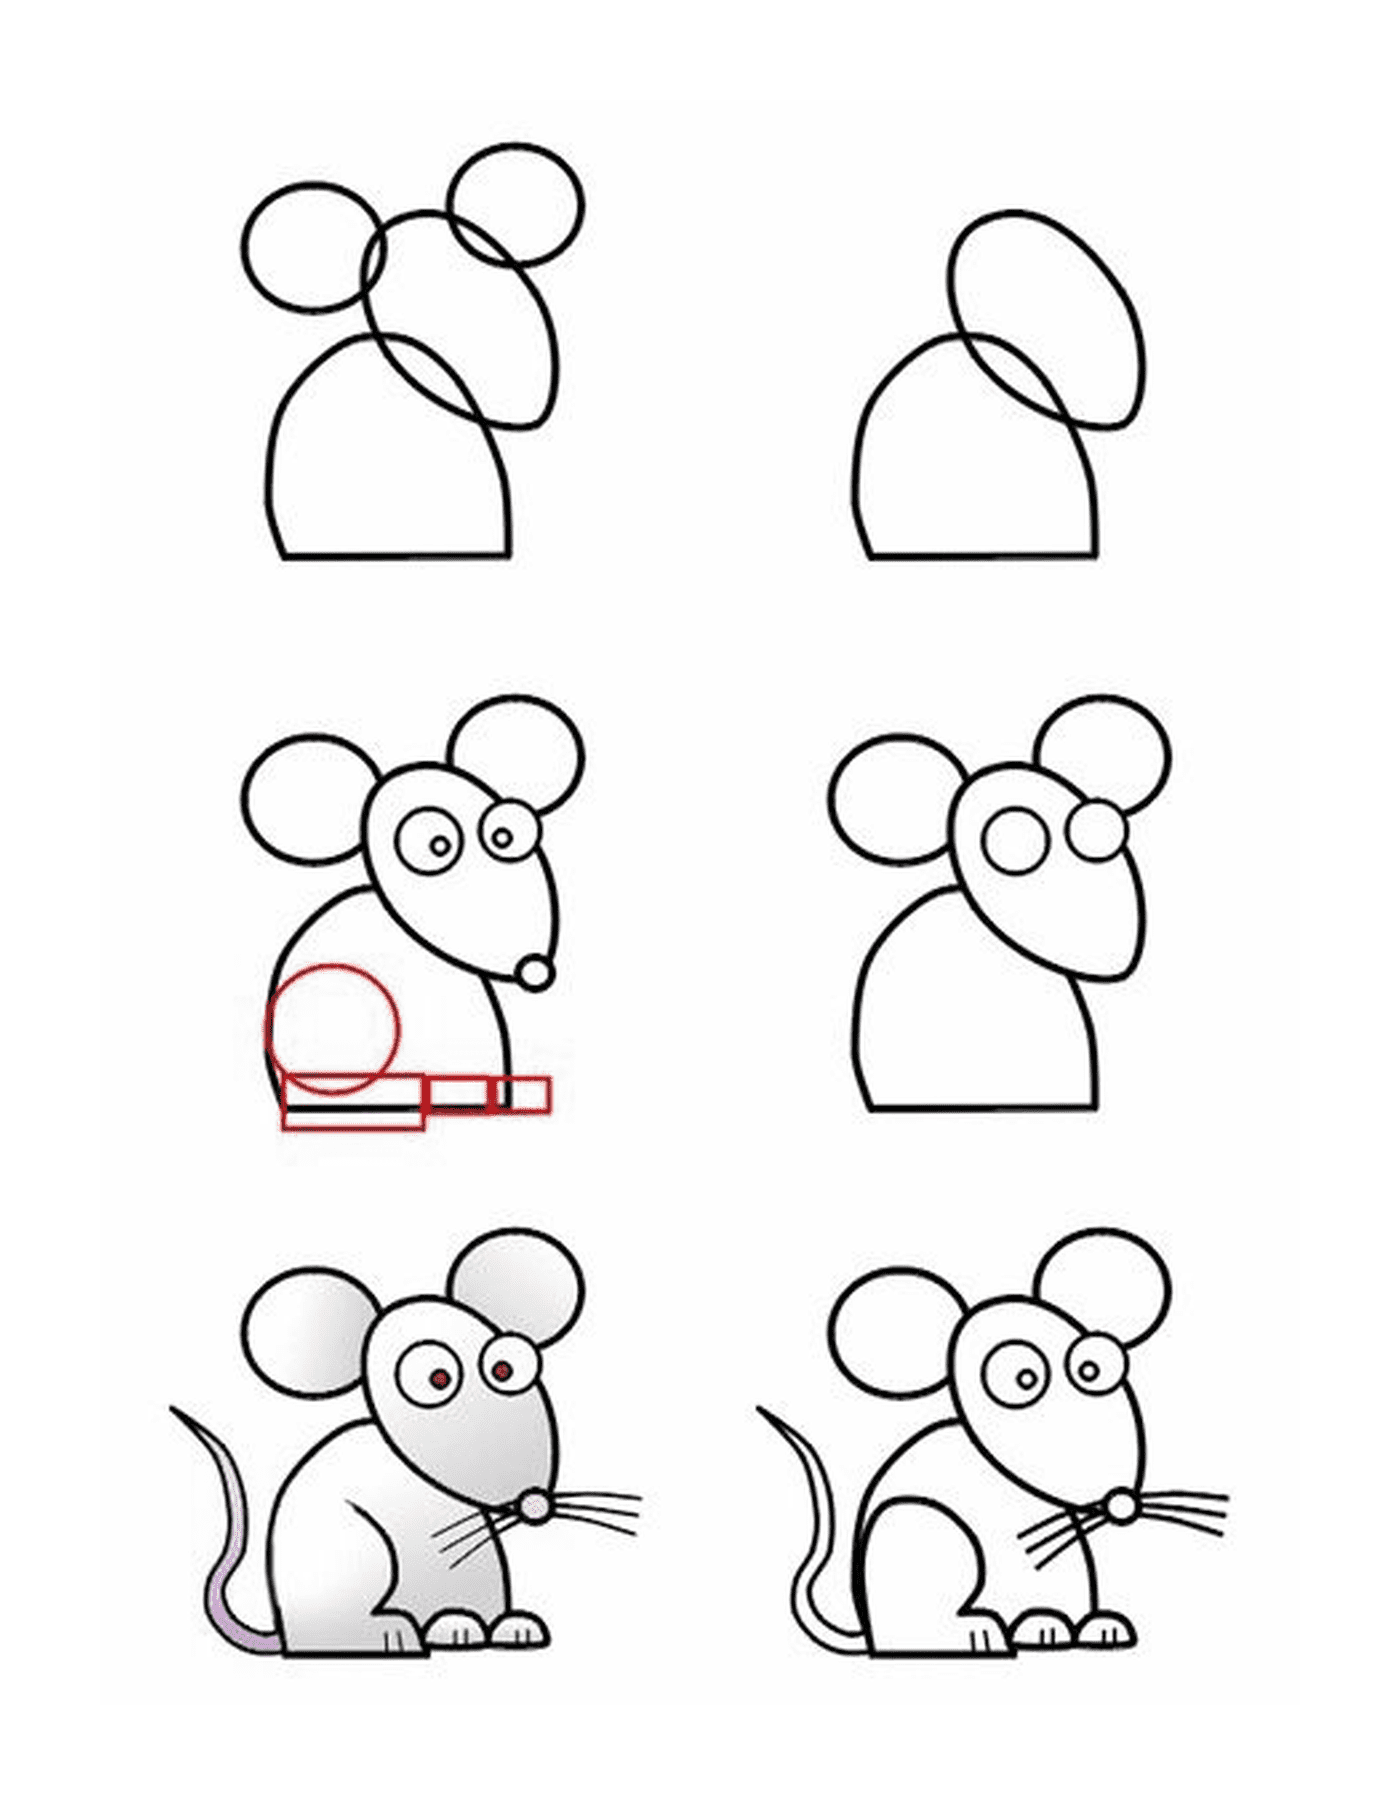  Cómo dibujar un ratón fácilmente 